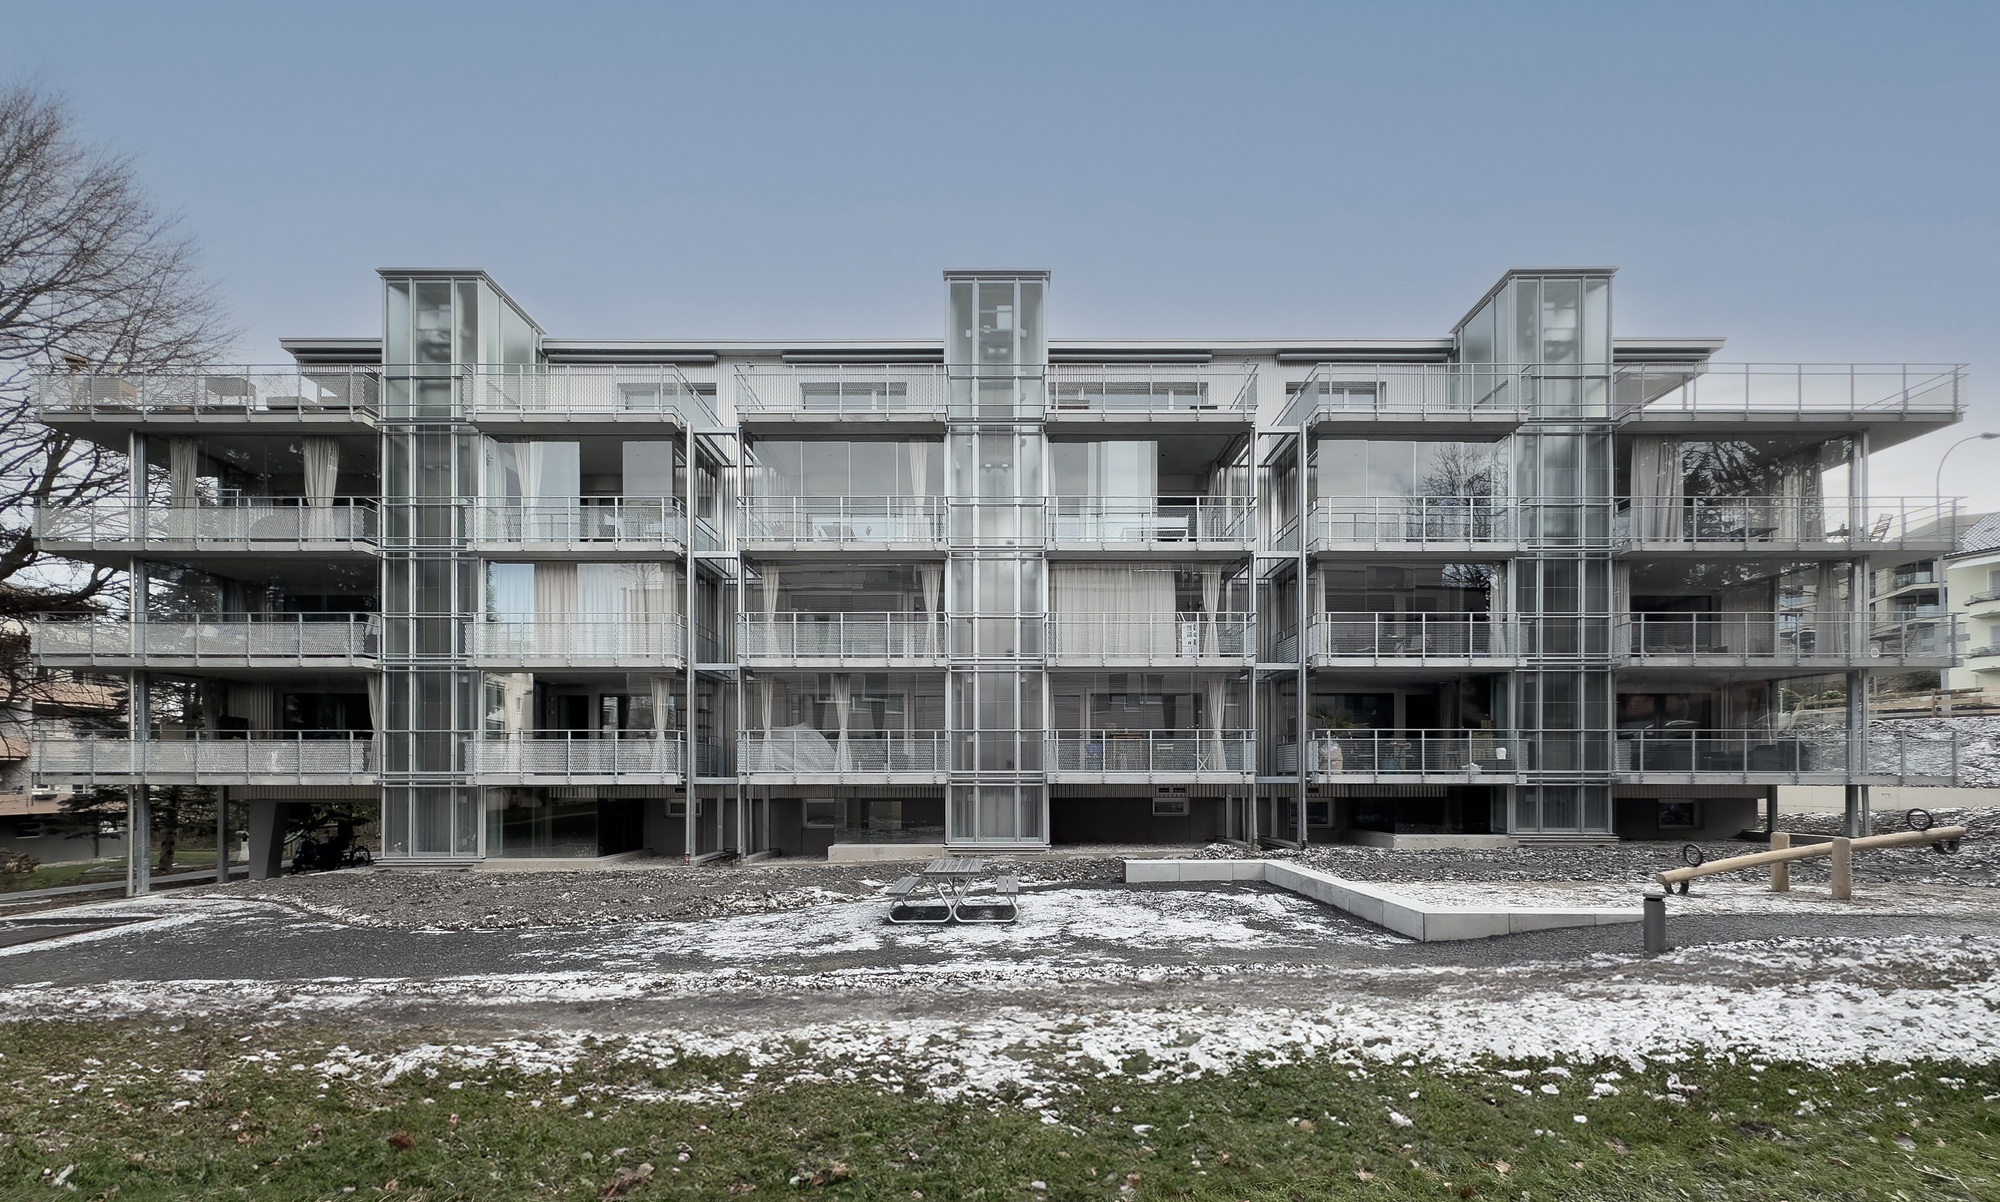 Многоквартирный дом Transformation Langensand / Galliker und Riva Architekten